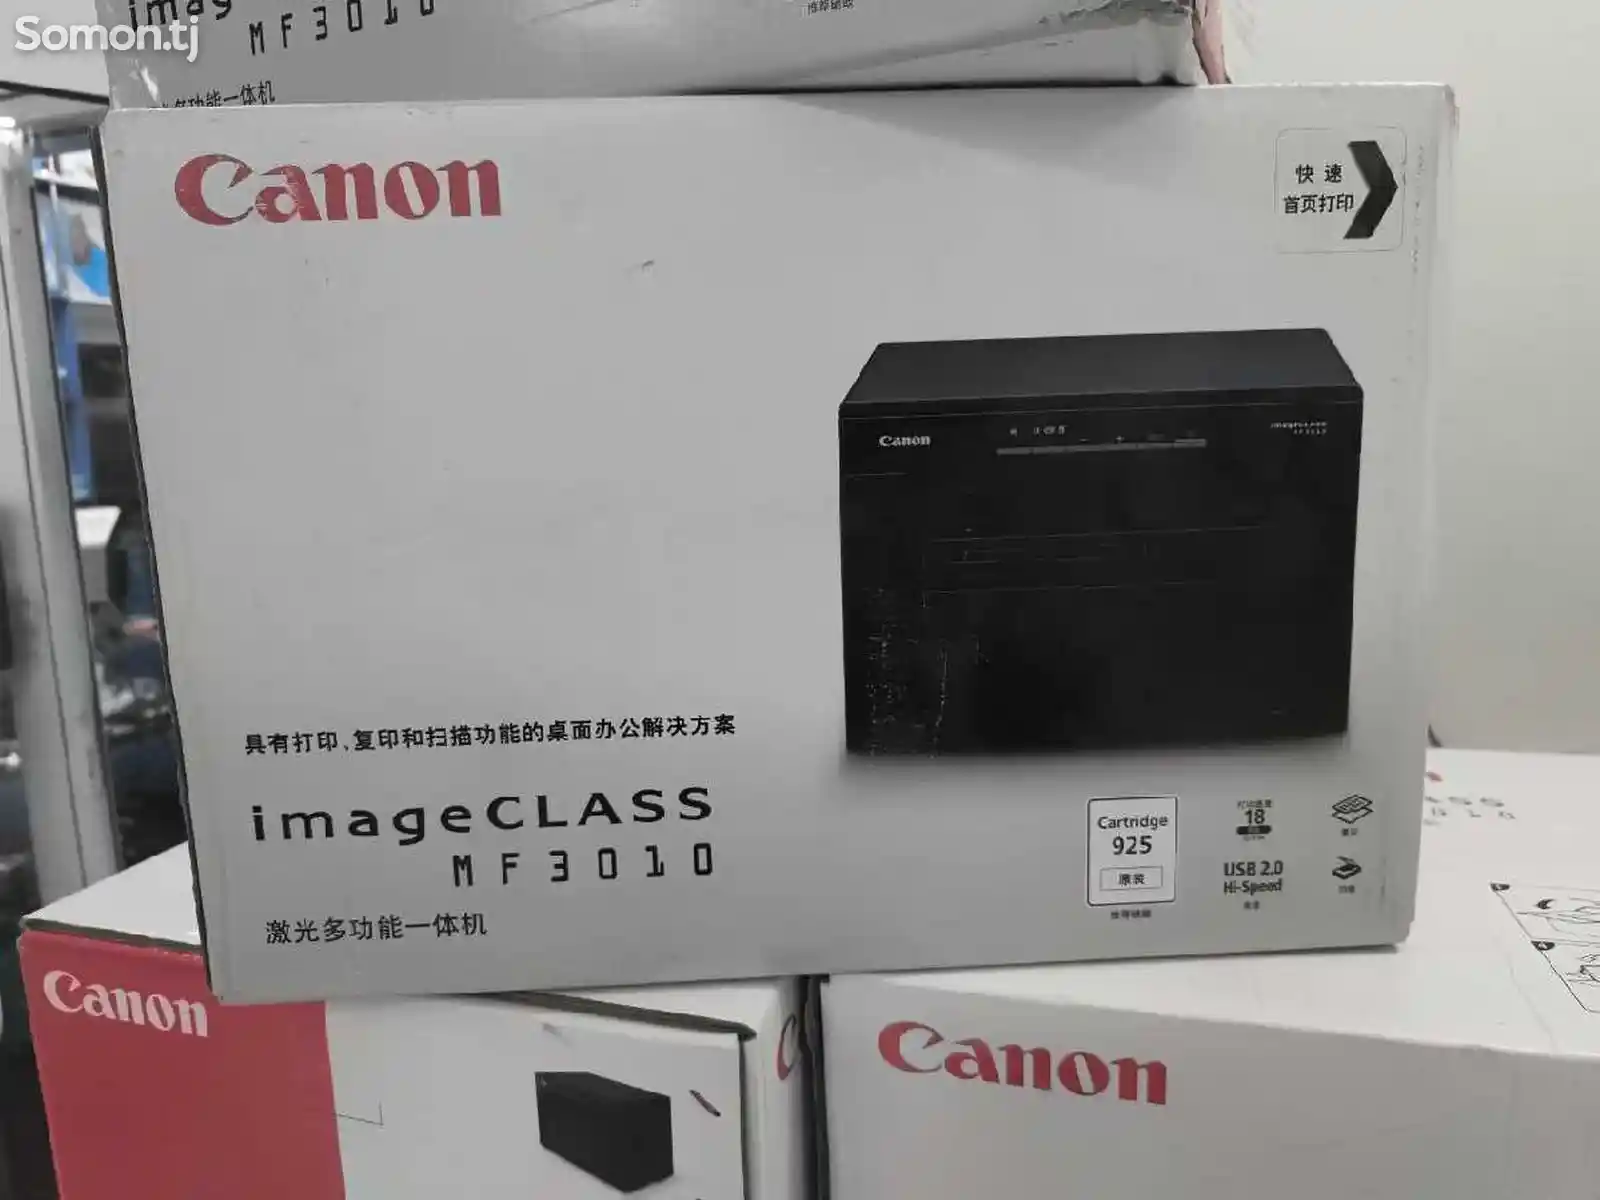 Принтер Canon image Class Mf 3010-1